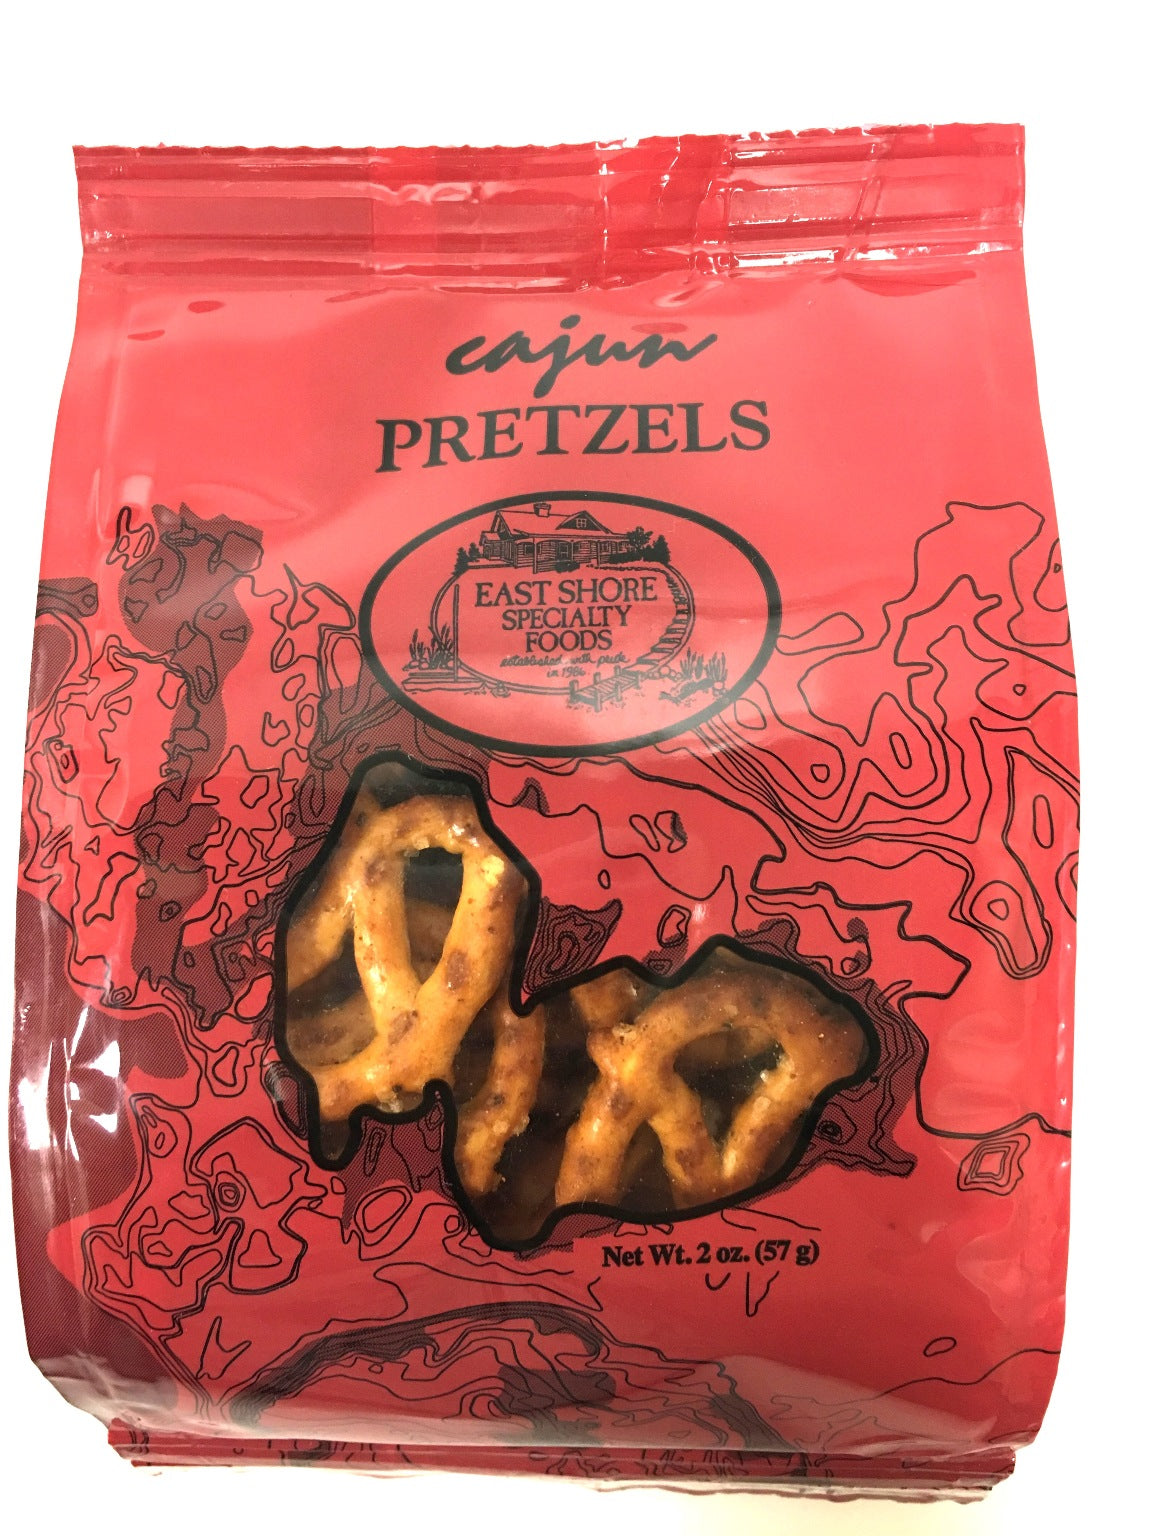 Cajun Pretzels 2 oz bag (5 pack)